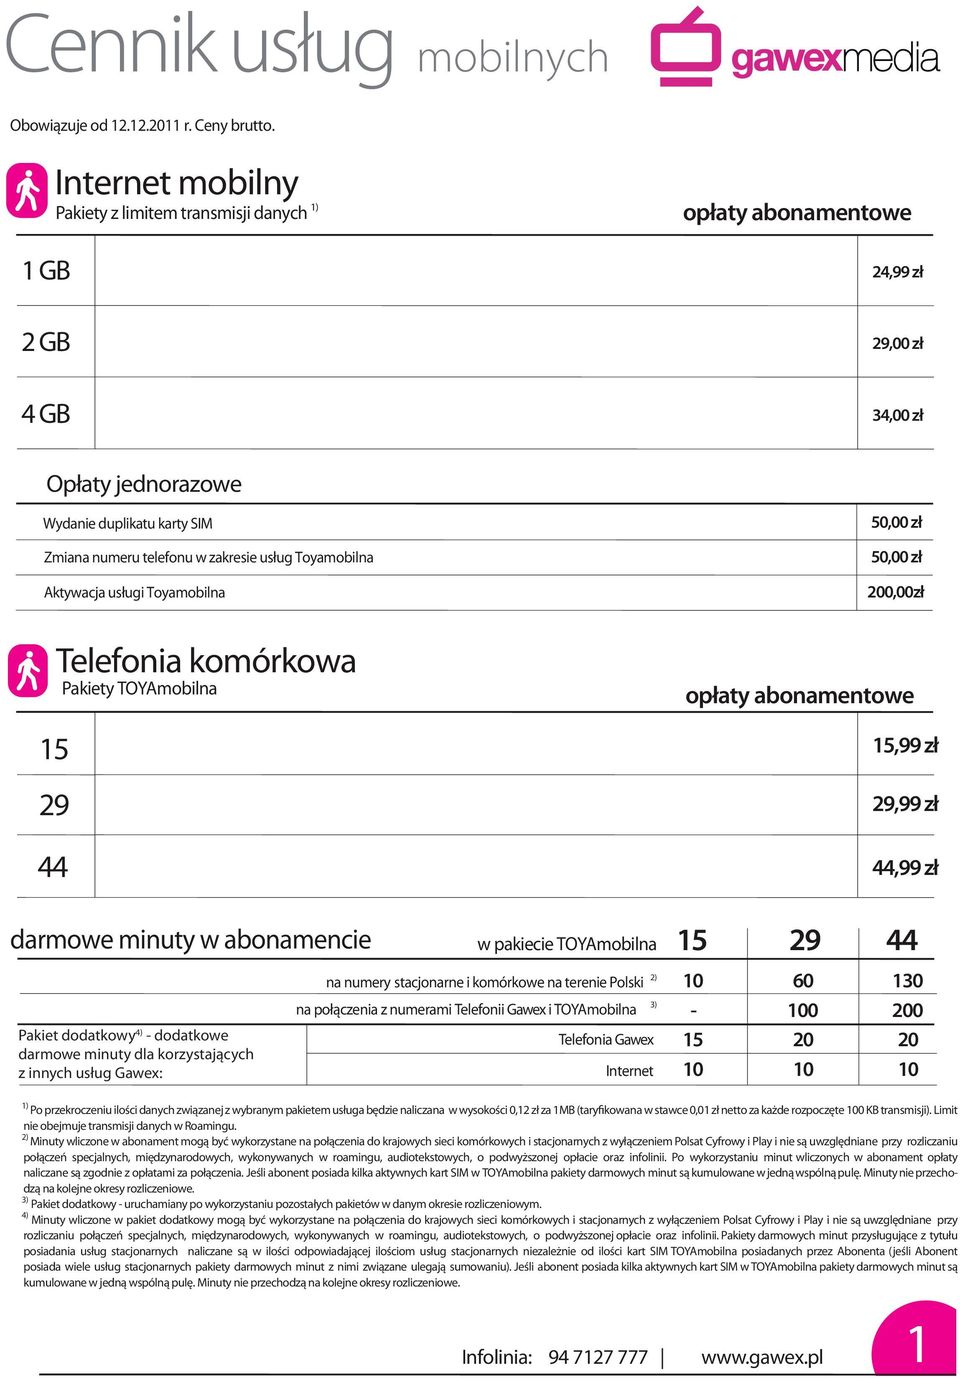 dodatkowy 4) - dodatkowe darmowe minuty dla korzystających z innych usług Gawex: w pakiecie TOYAmobilna 15 29 44 na numery stacjonarne i komórkowe na terenie Polski 10 60 130-100 200 Telefonia Gawex